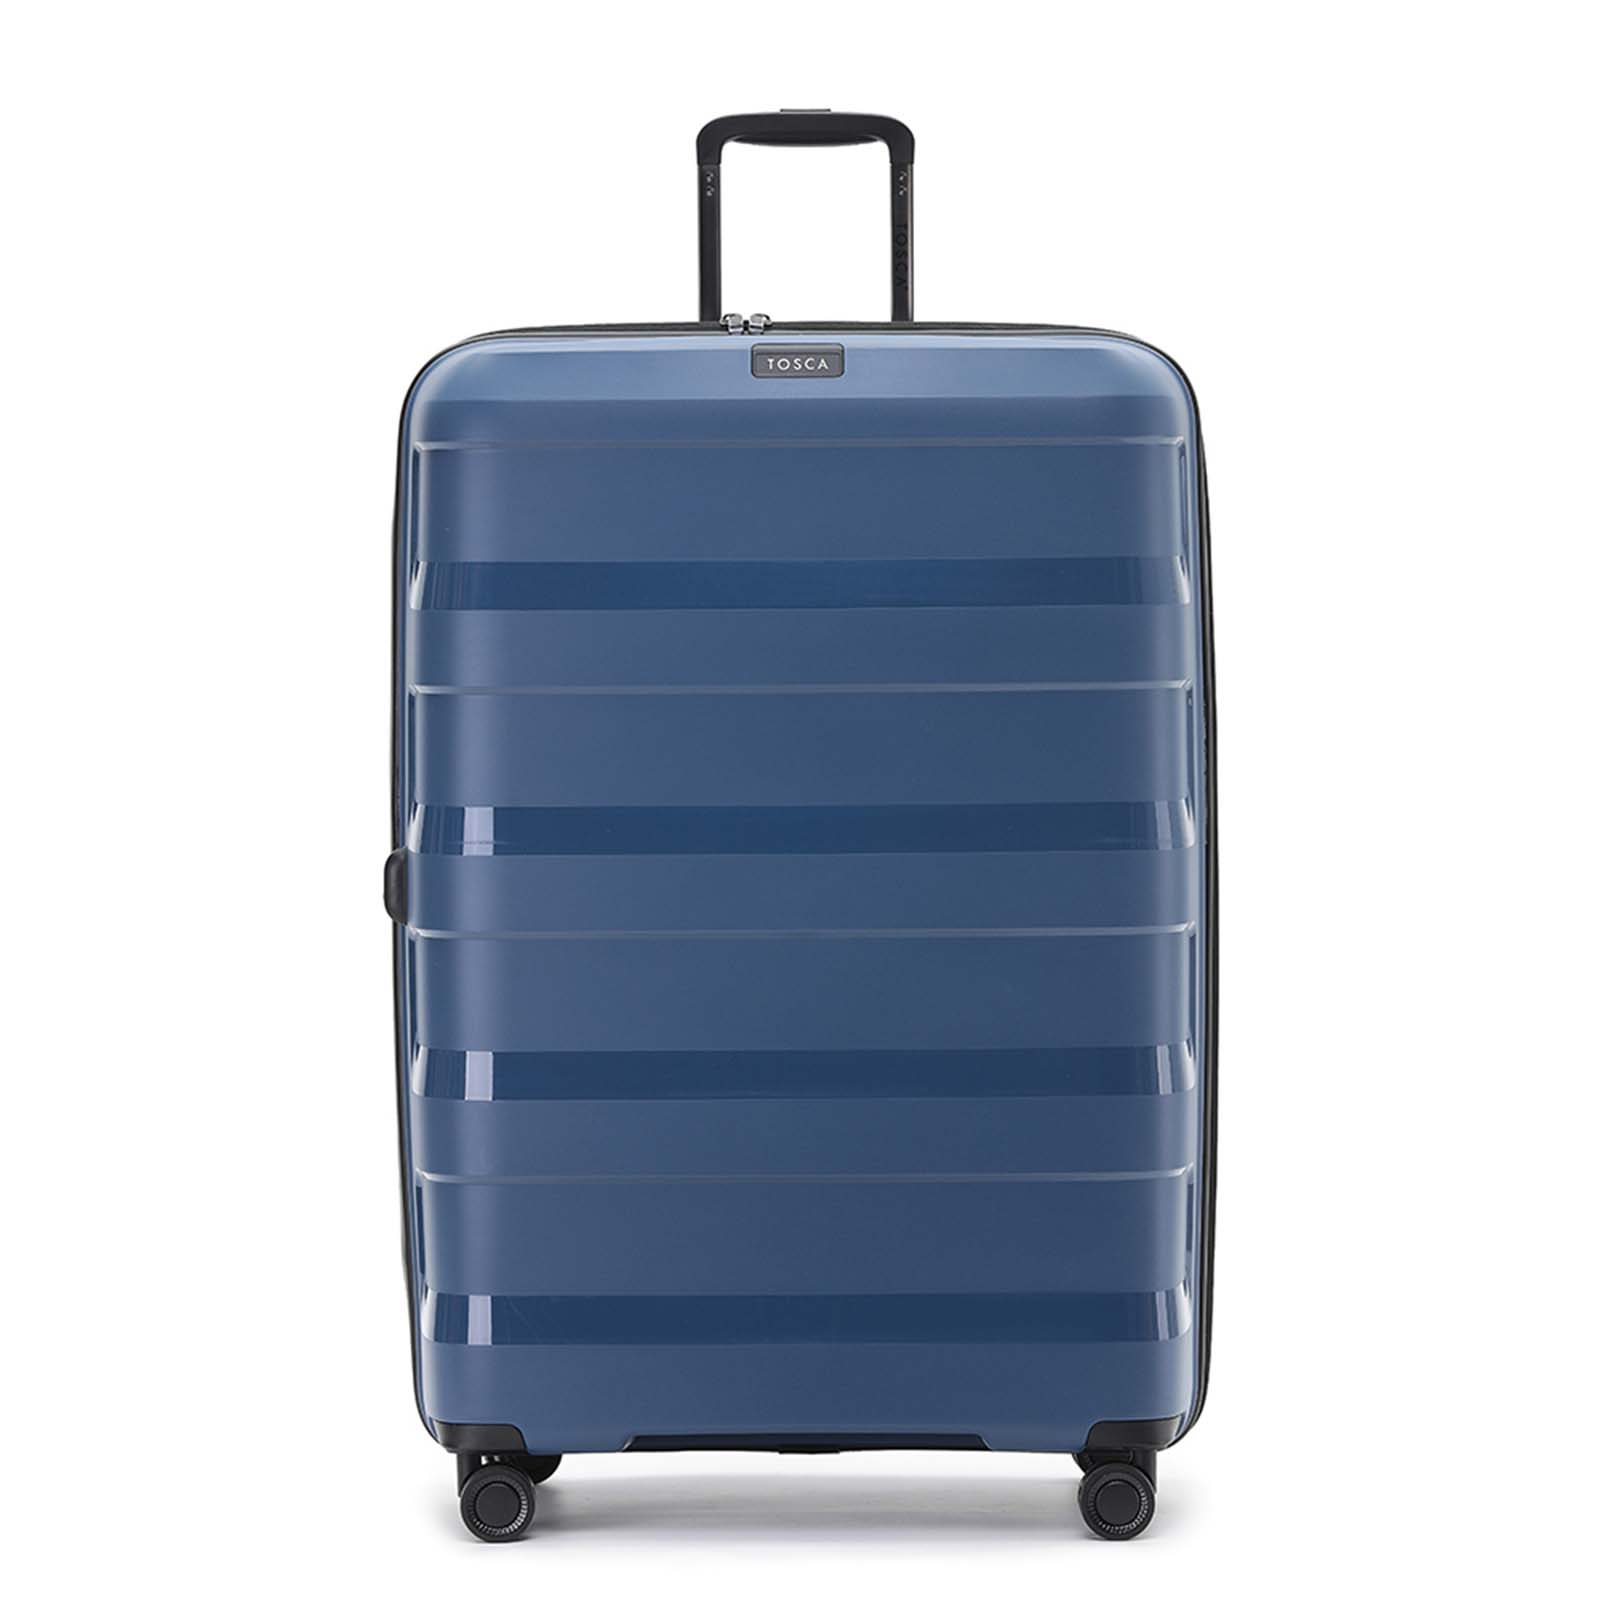 Tosca-Comet-4-Wheel-81cm-Large-Suitcase-Storm-Blue-Front